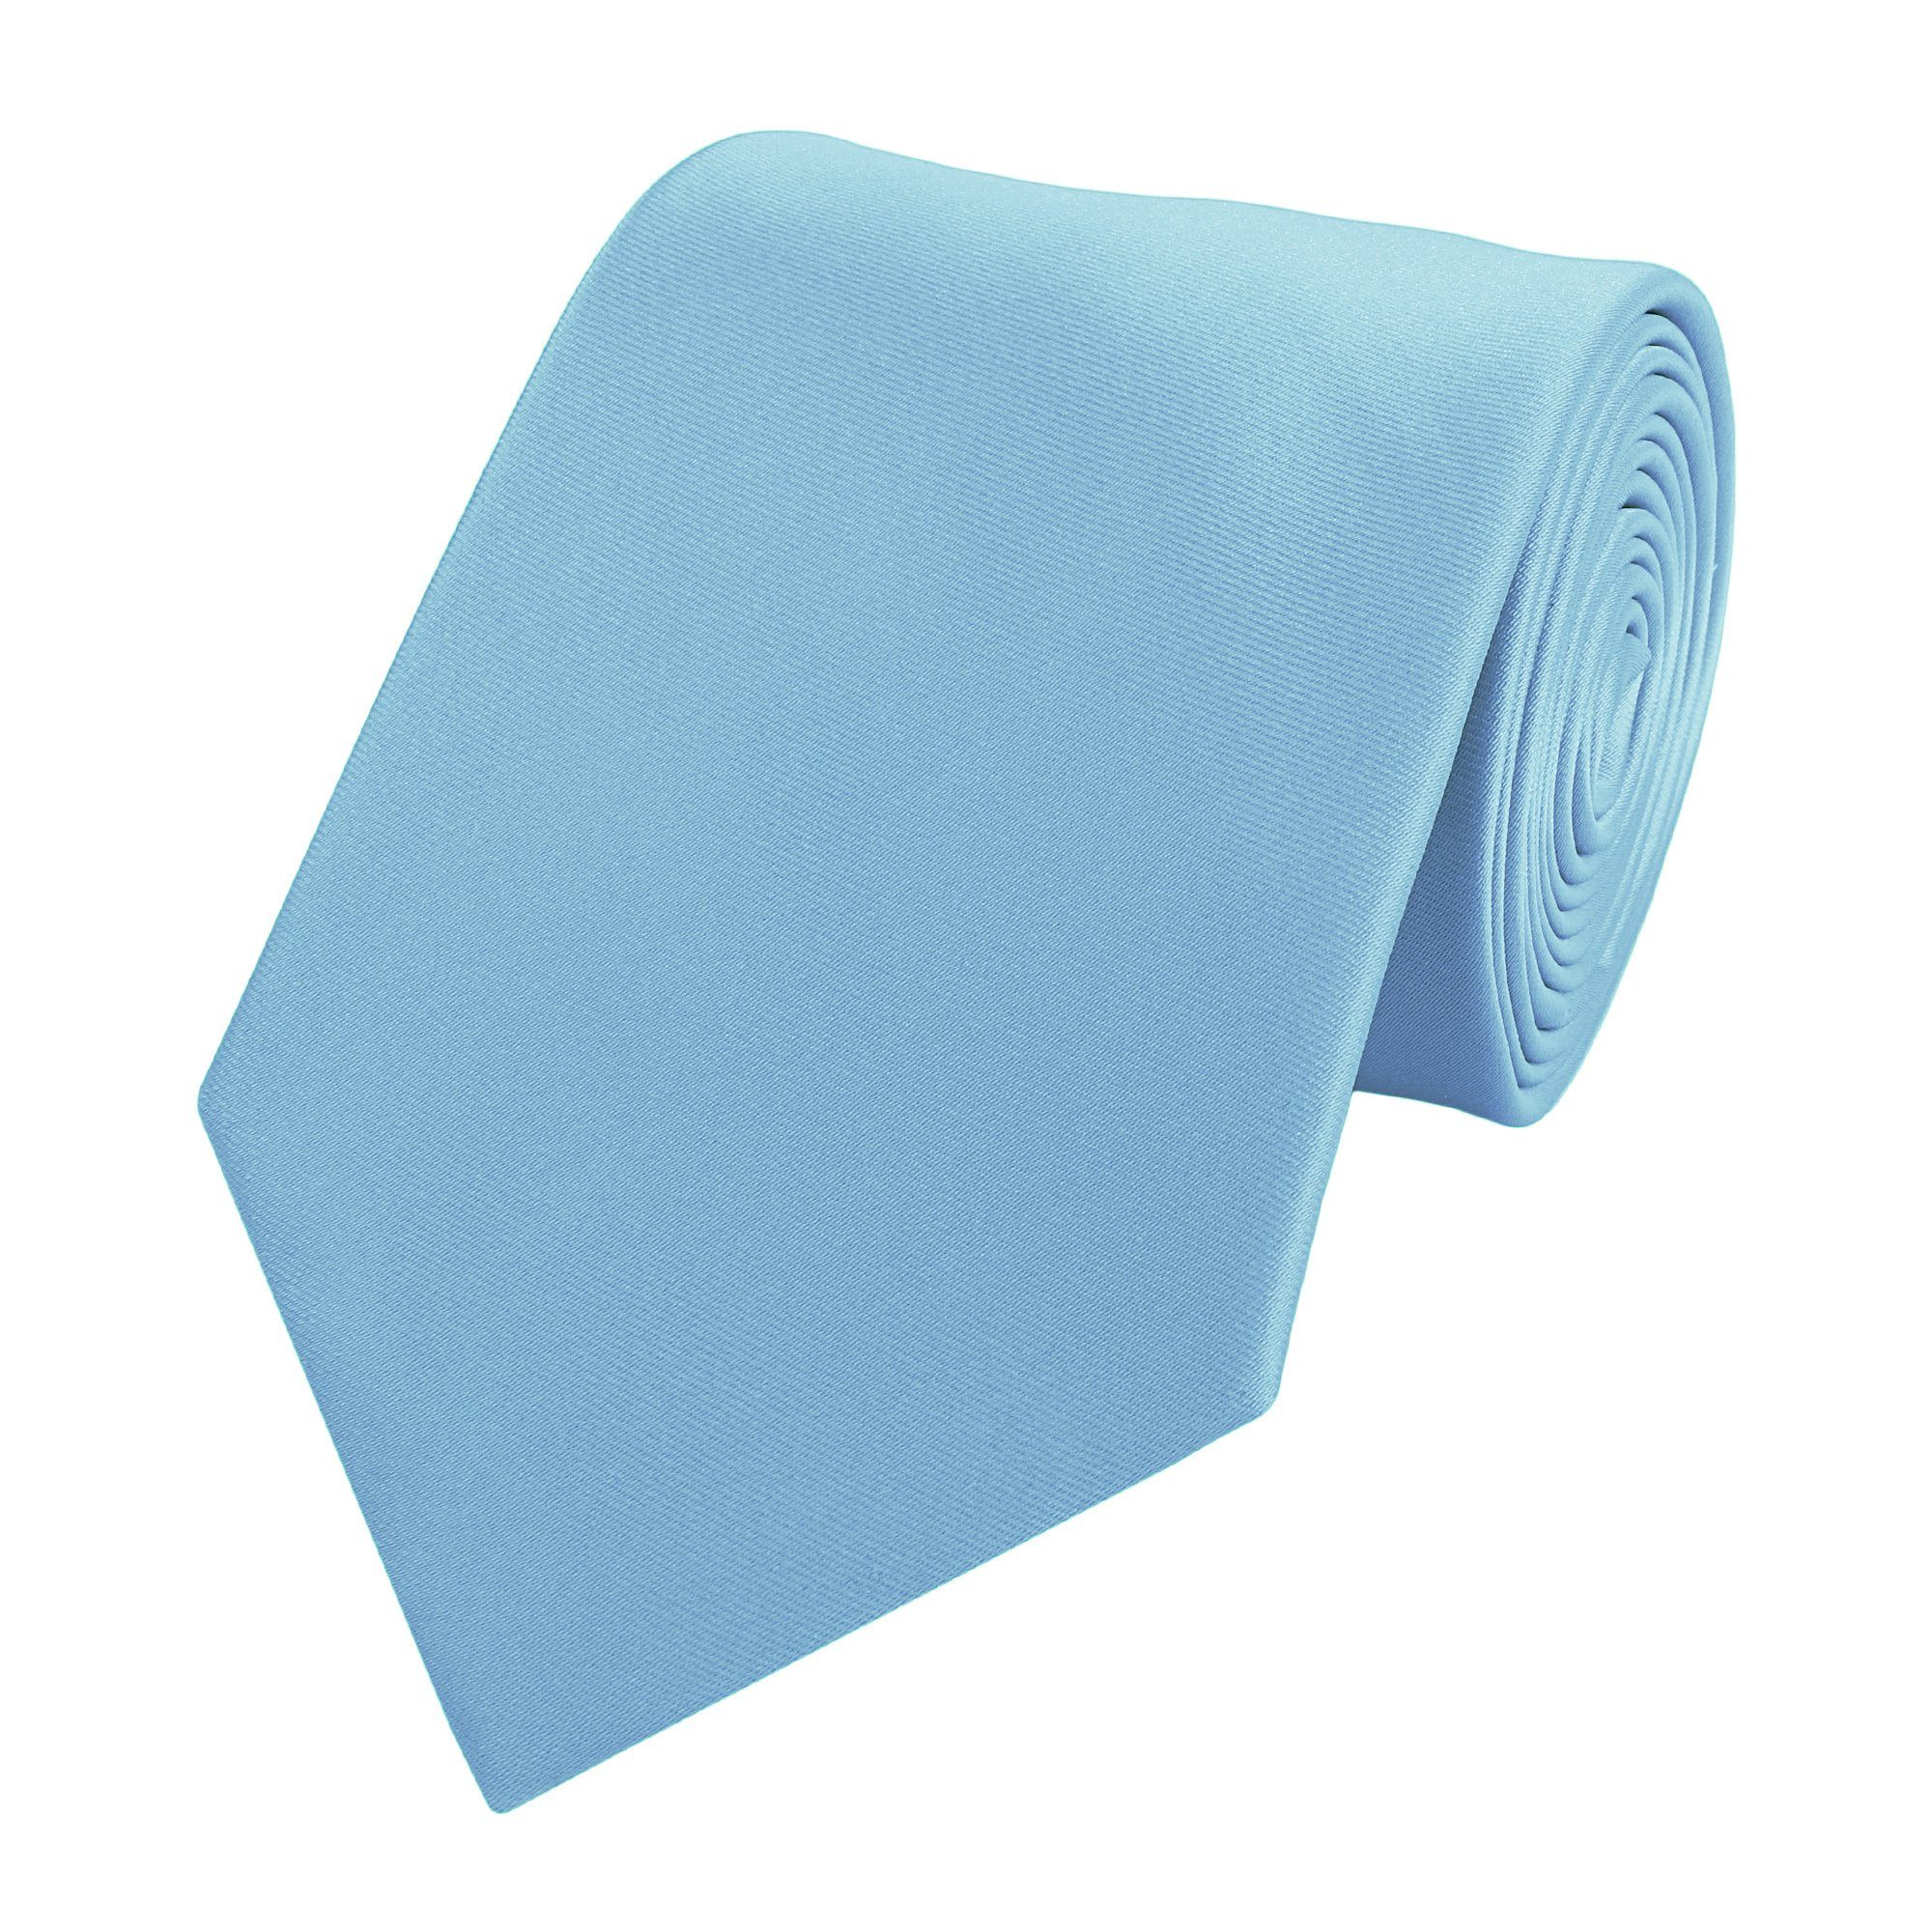 Männer Box, klassische 8cm (ohne Krawatten - Fabio Breit Uni in Blautöne Farini Unifarben) Himmelblau Schlipse Krawatte - Herren Breite Uranus (8cm), Hellblau Einfarbig